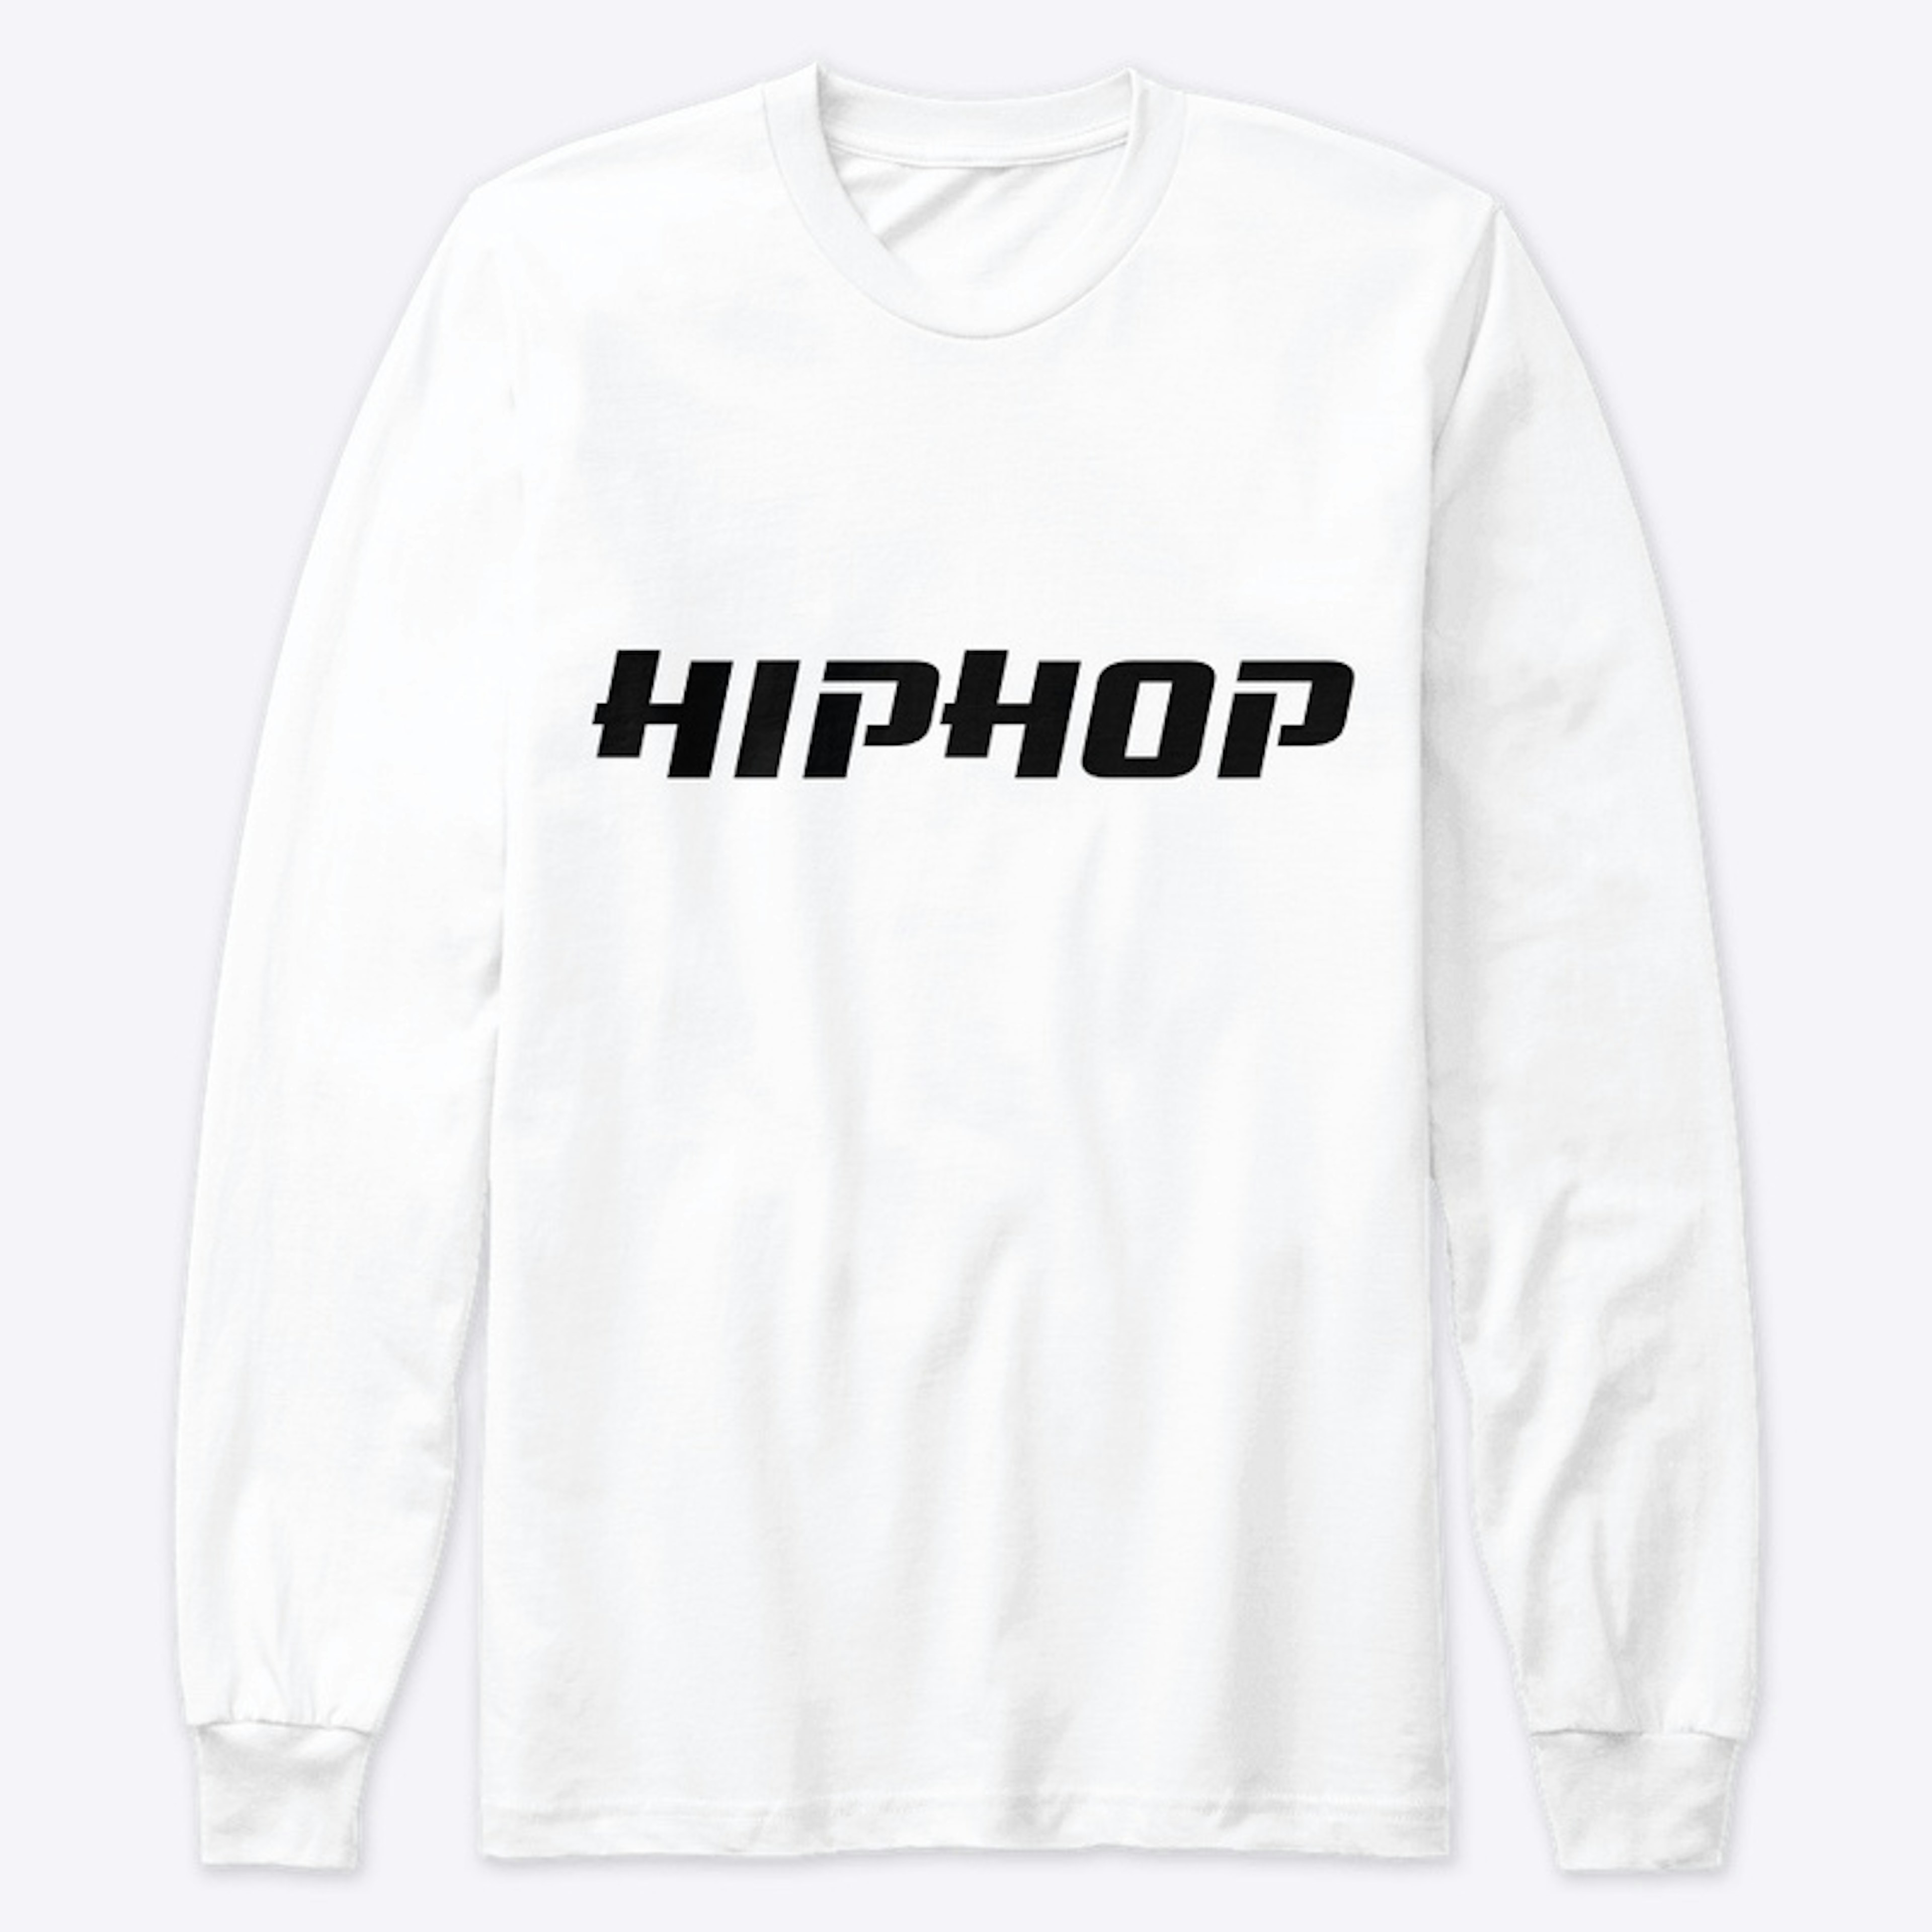 Hiphop logo design